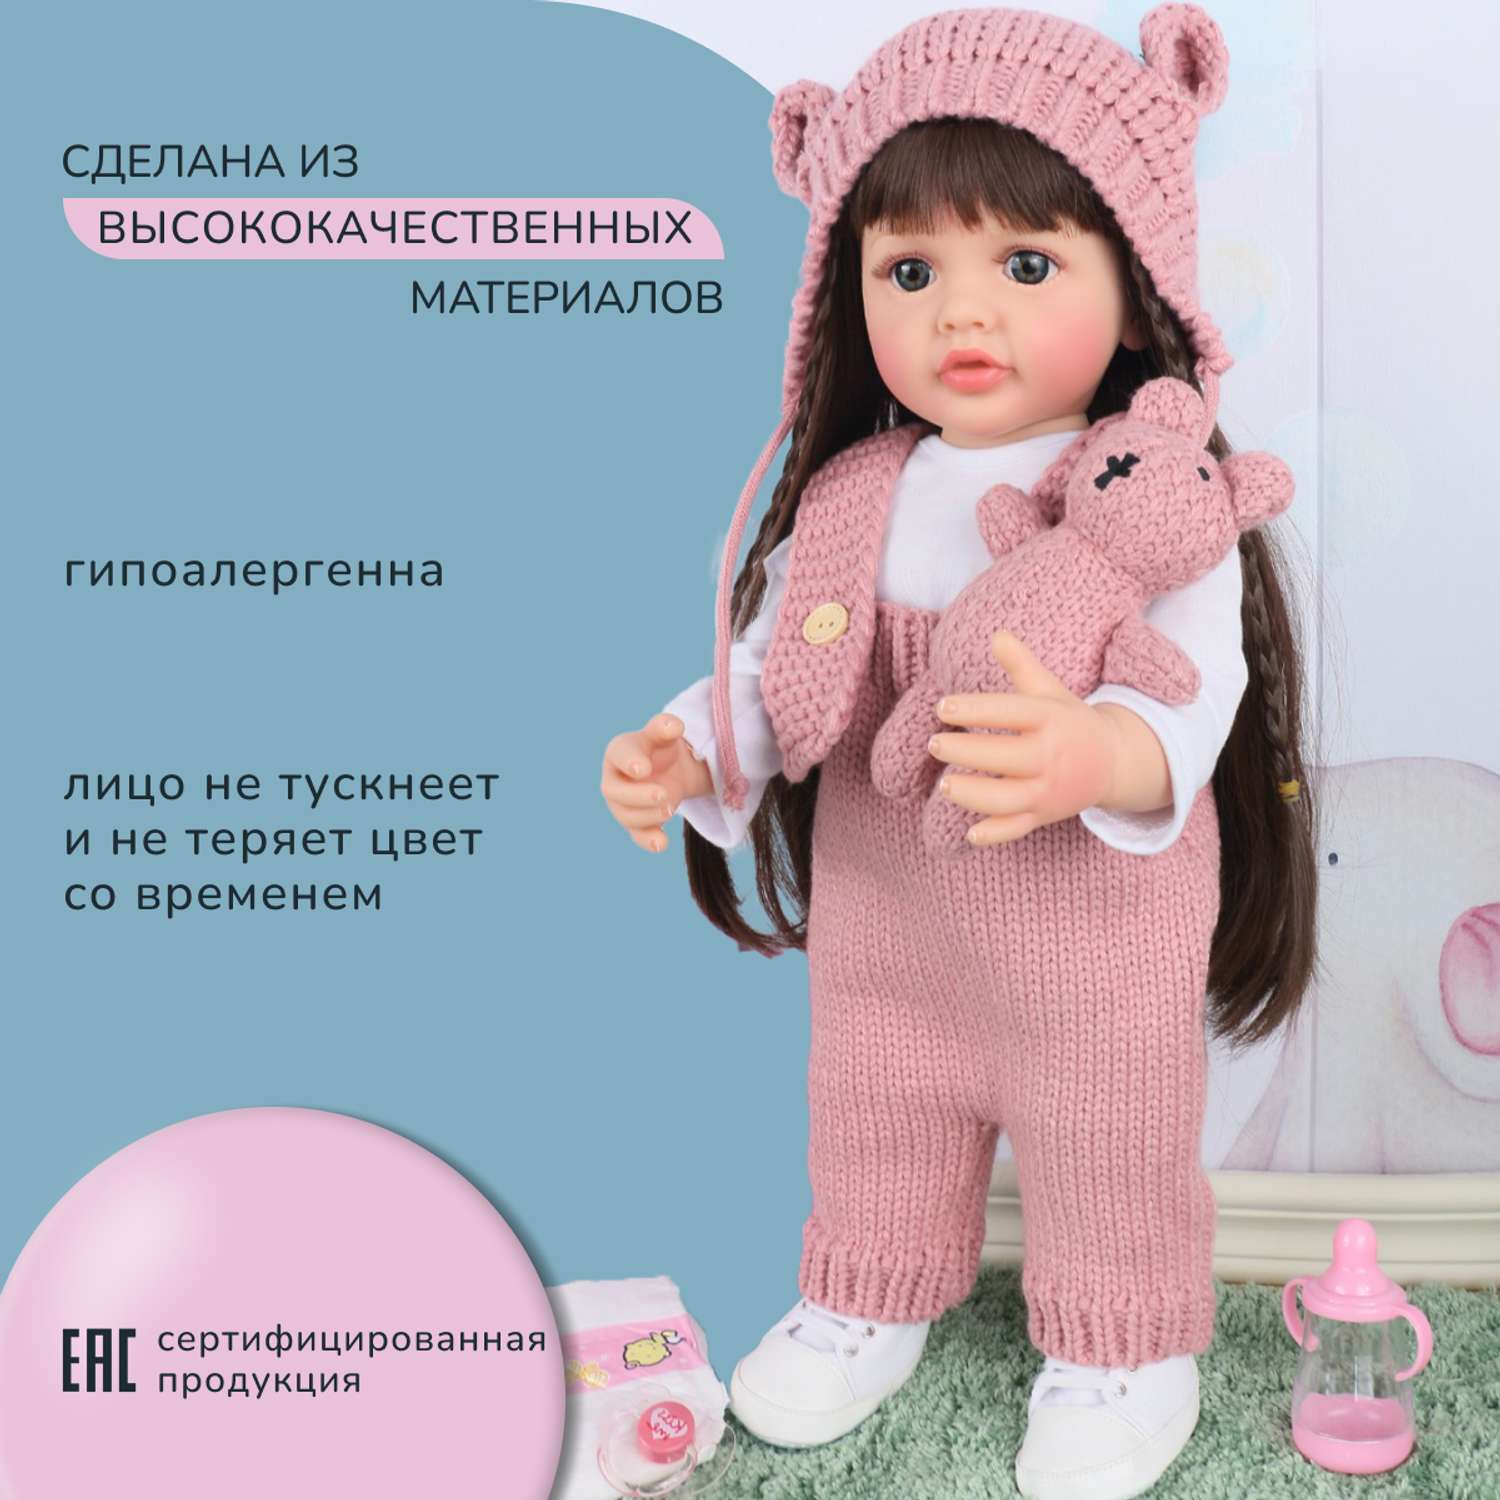 Кукла Реборн QA BABY Анастасия девочка большая пупс набор игрушки для девочки 55 см 5514 - фото 2